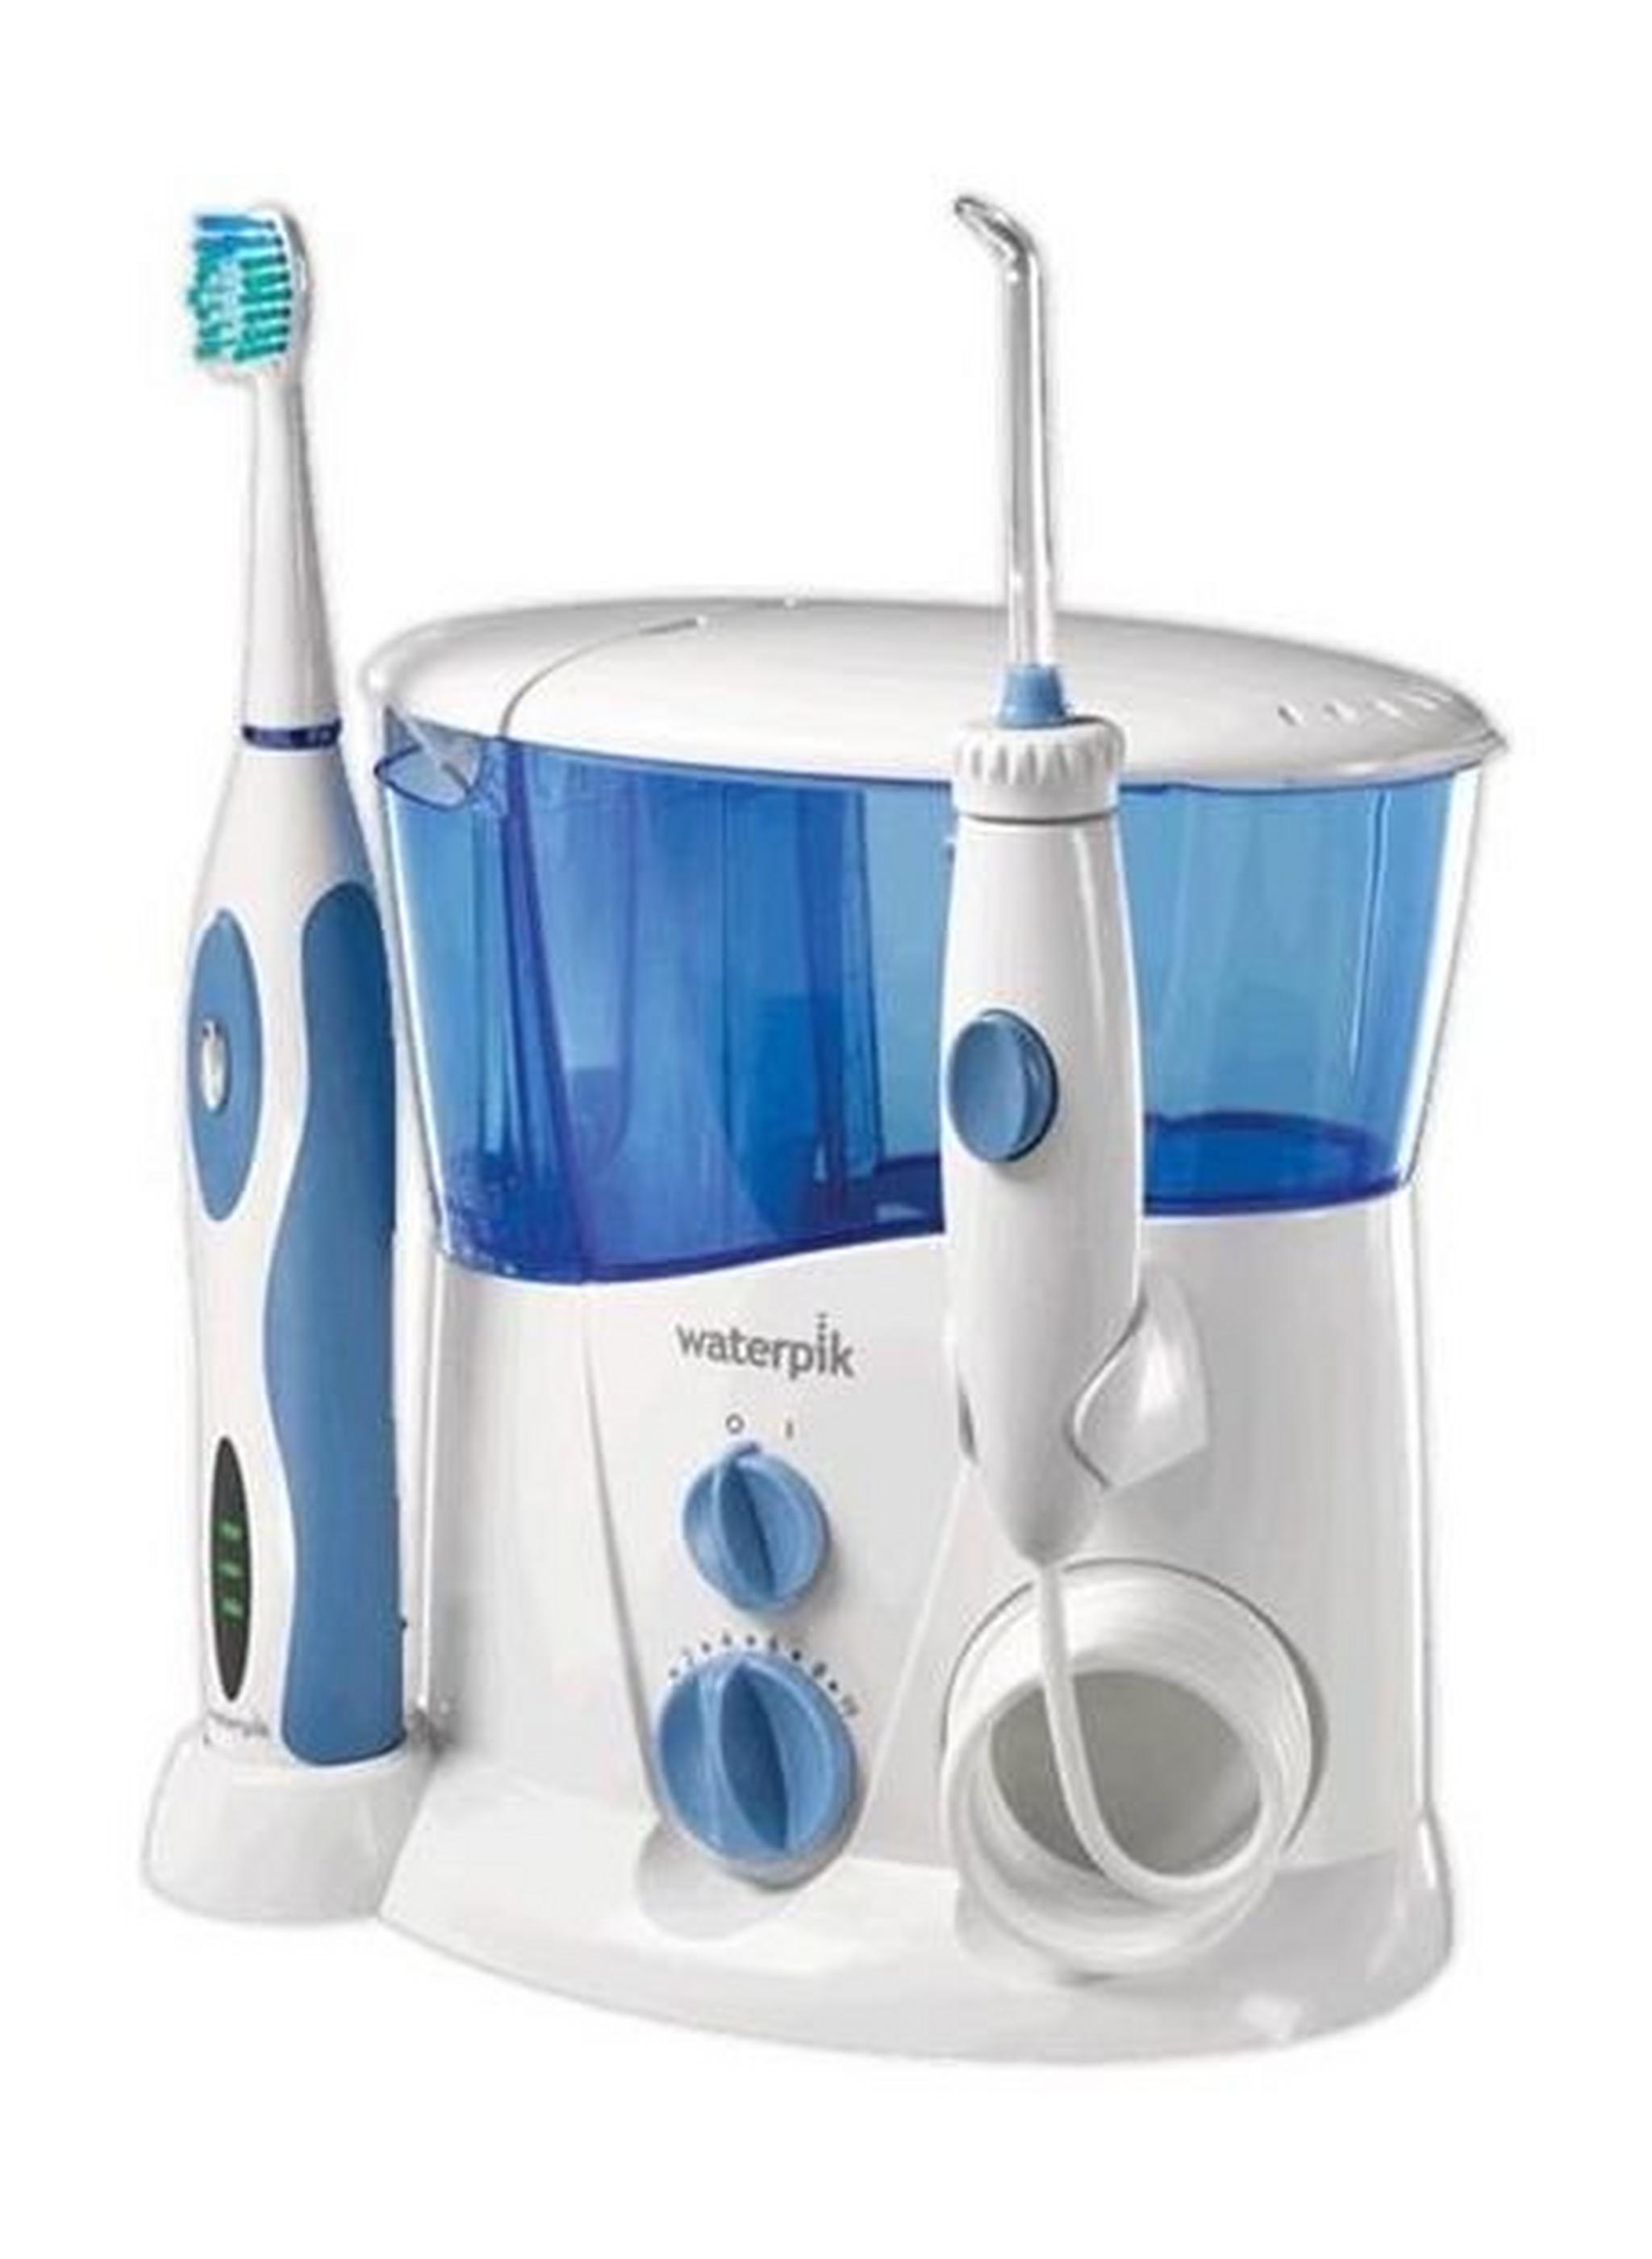 جهاز تنظيف الأسنان وإزالة الترسبات بالماء مع فرشاة أسنان من ووتربيك – أزرق - (WP-900E2)